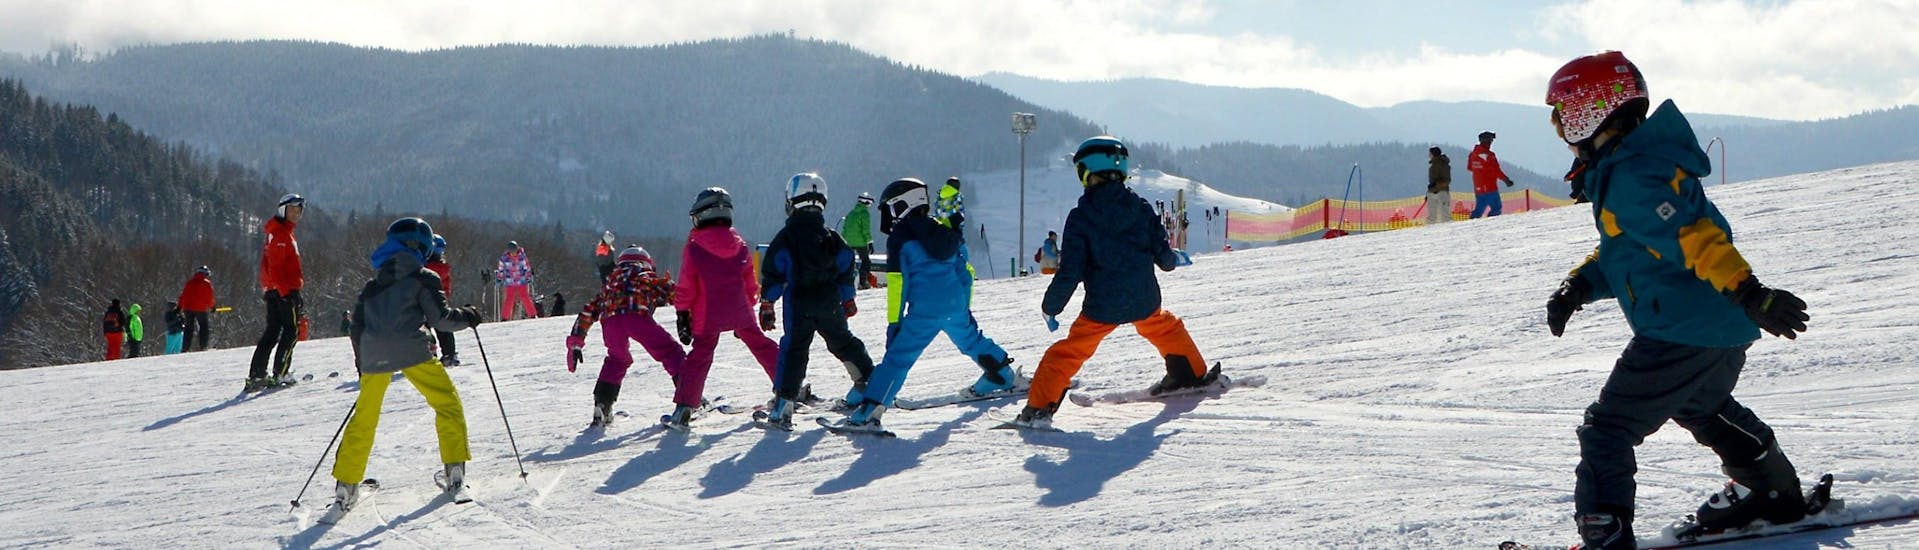 Kinder-Skikurs (6-12 J.) für alle Levels mit Eco Skischule Andermatt.